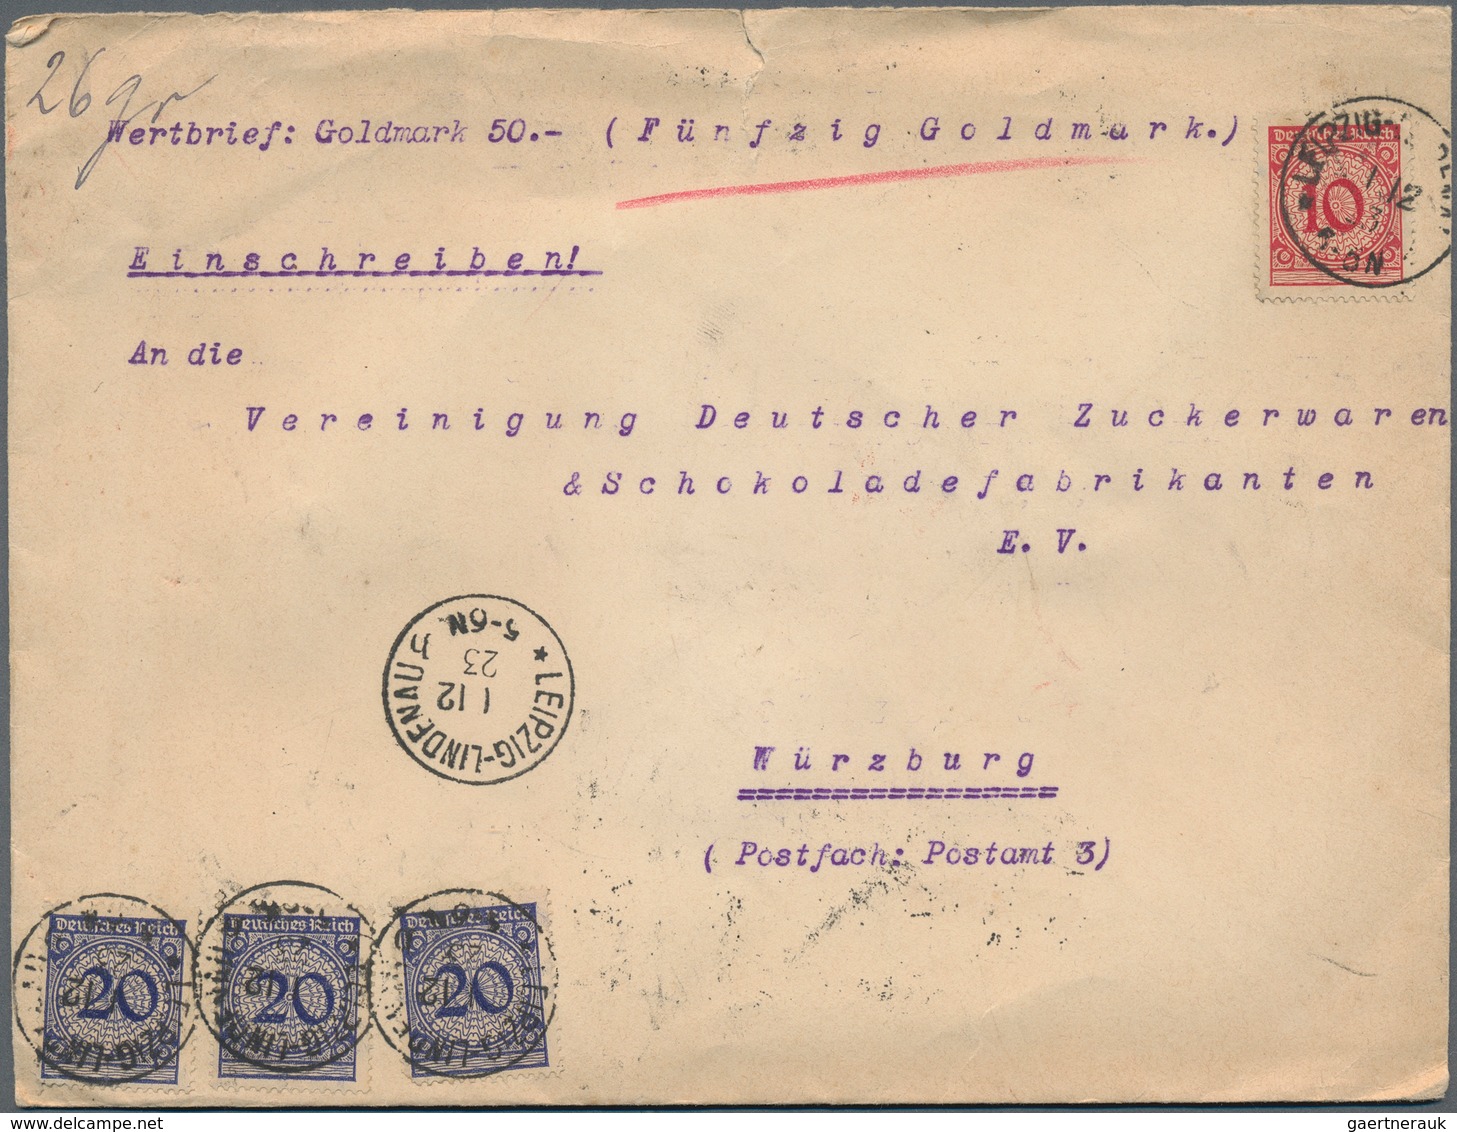 30014 Deutsches Reich - Inflation: 1923, HOCHINFLATION, ursprünglicher Posten mit über 200 Briefen einer F